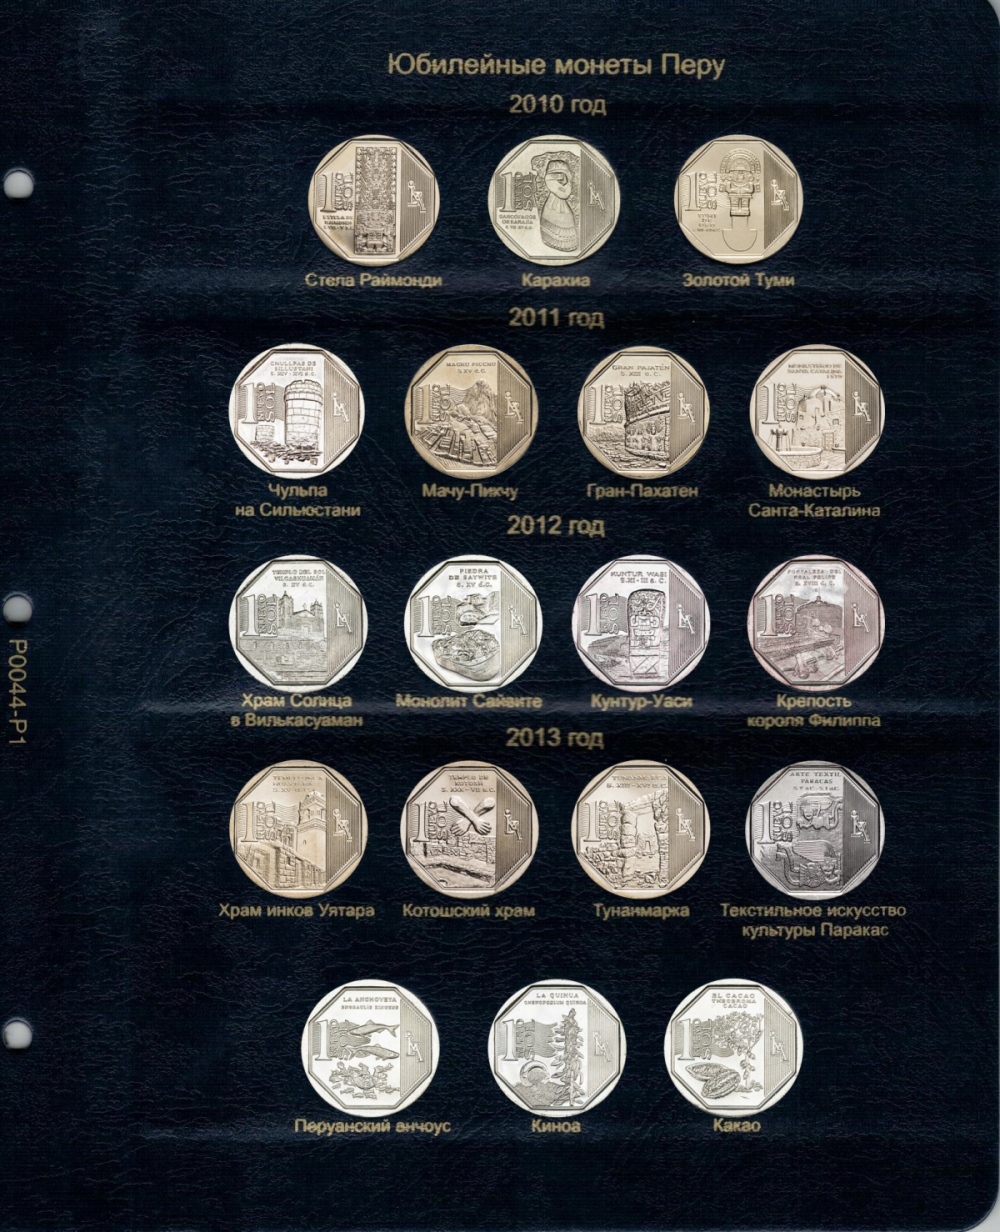 Комплект листов для юбилейных монет Перу 2010-2018 гг. - 809